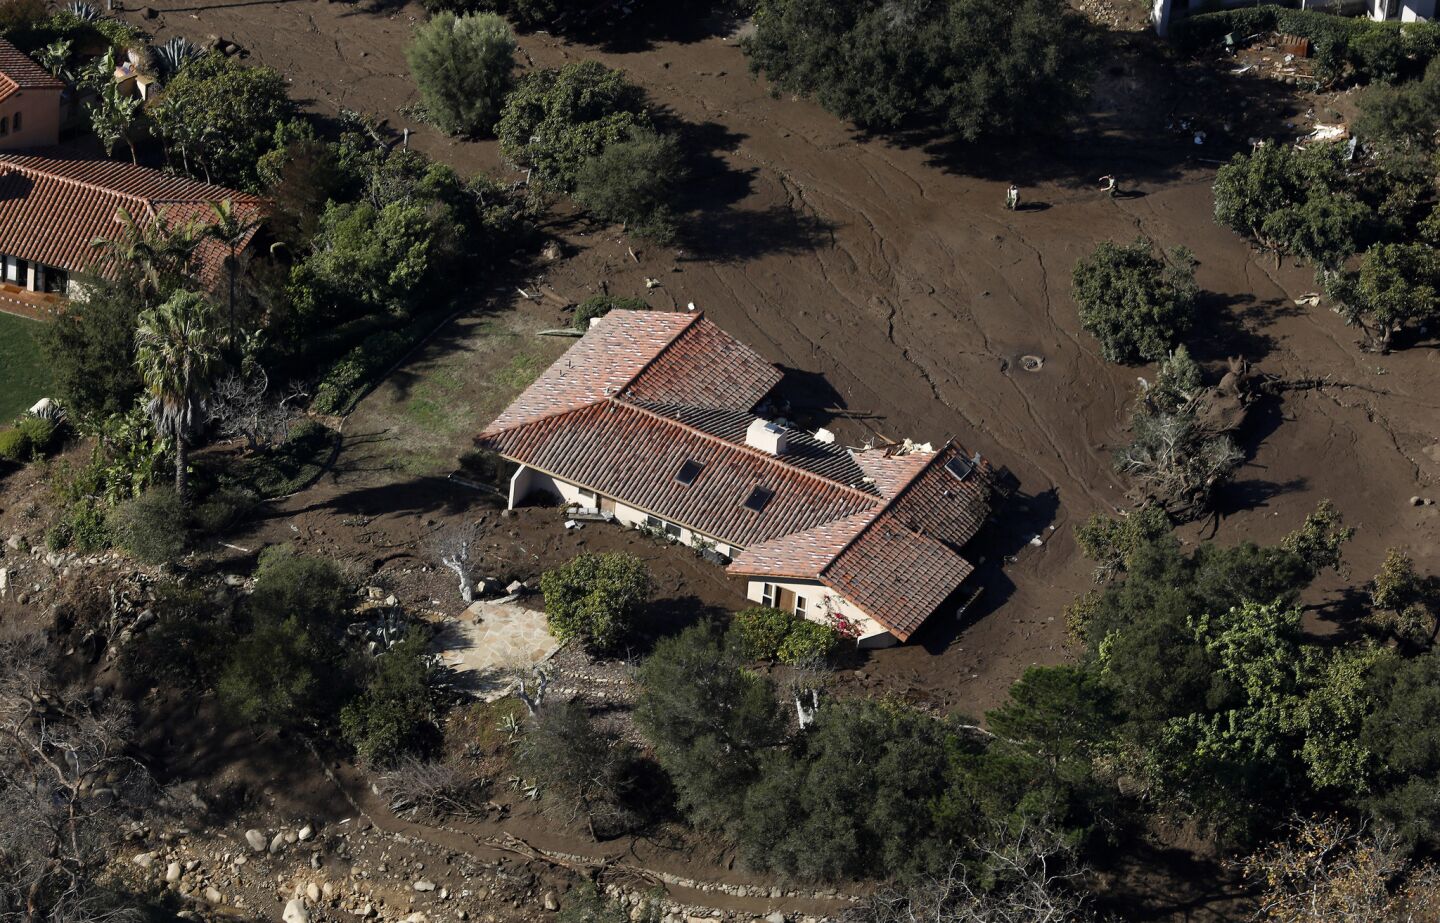 Montecito mudslides